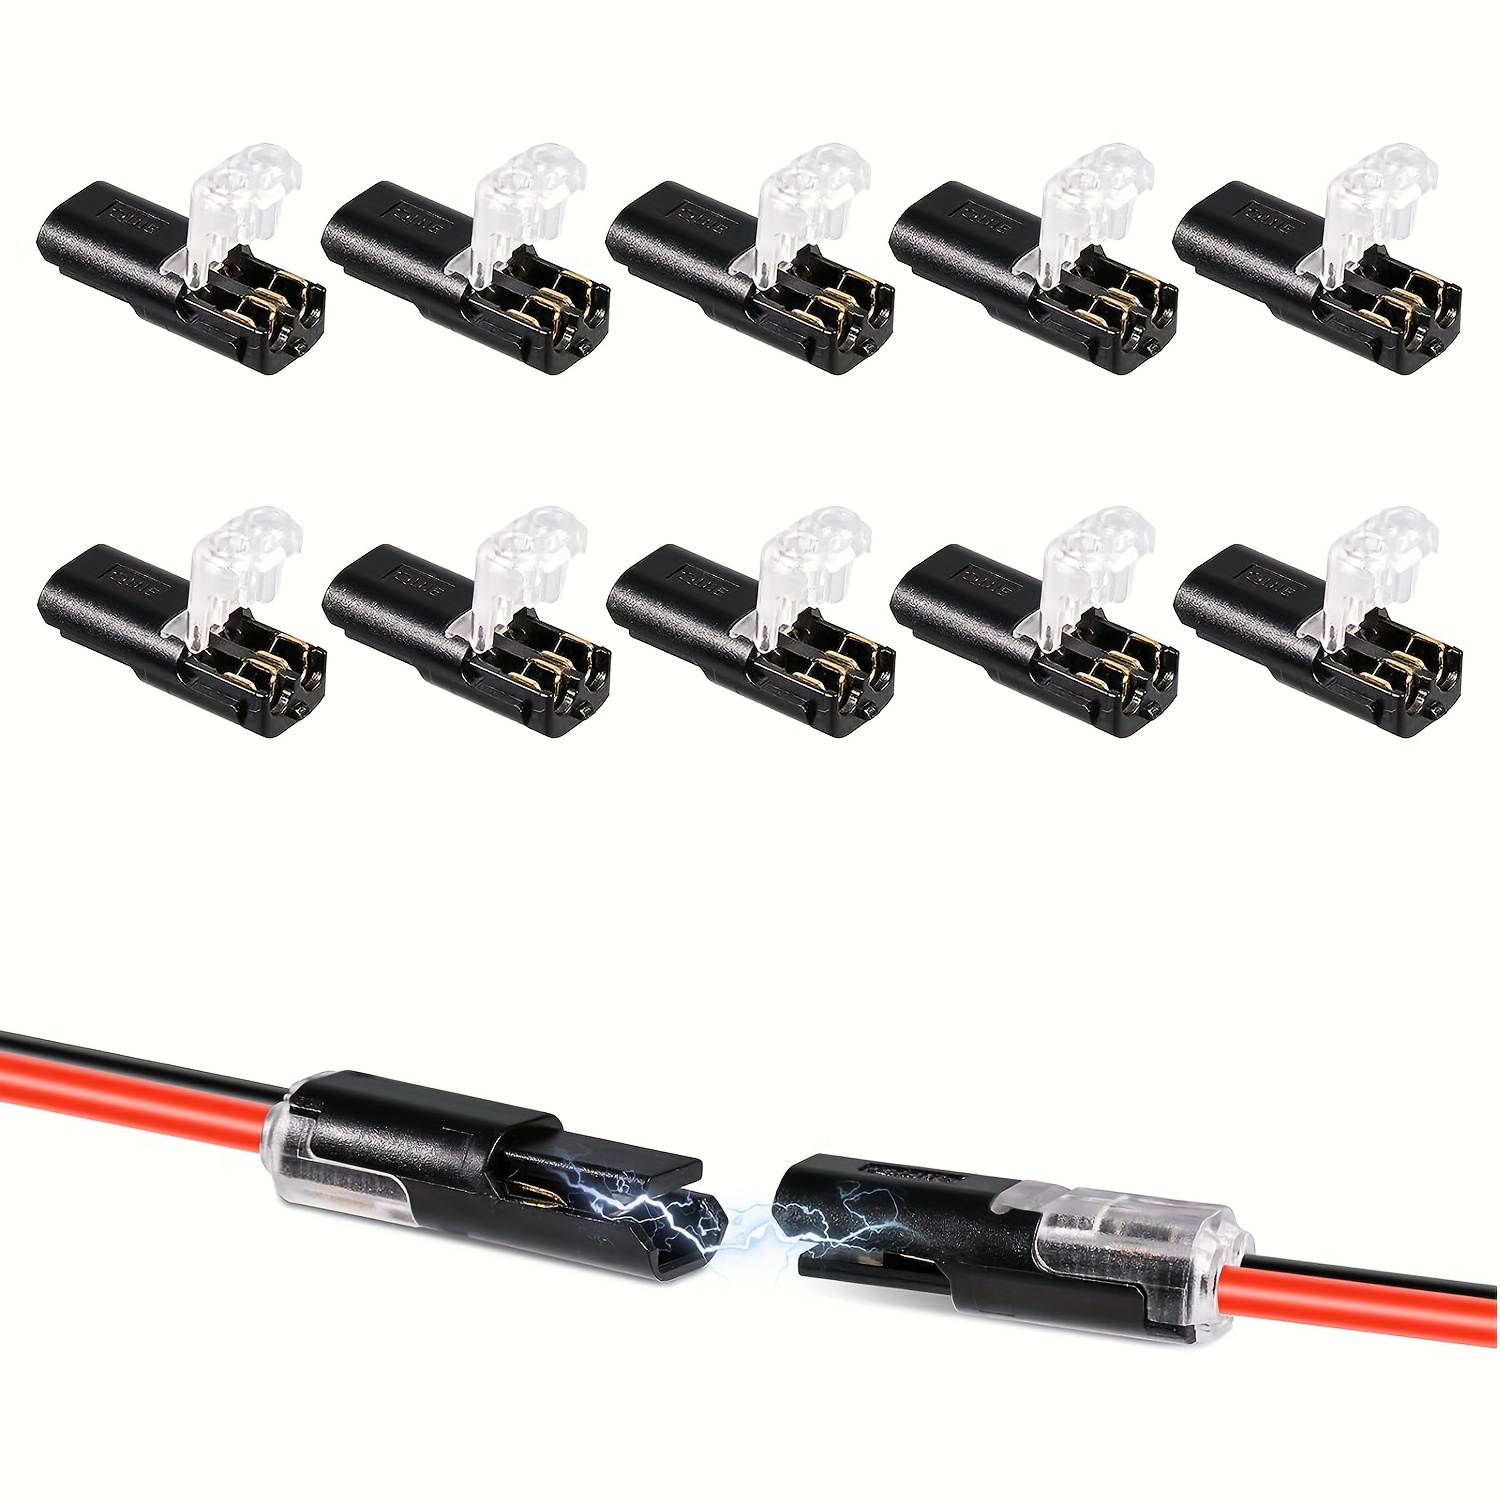 20pcs Connecteur enfichable à double fil, connecteurs de fil LED  enfichables à 2 broches et 2 voies, avec connecteurs de fil rapide à boucle  de verrouillage